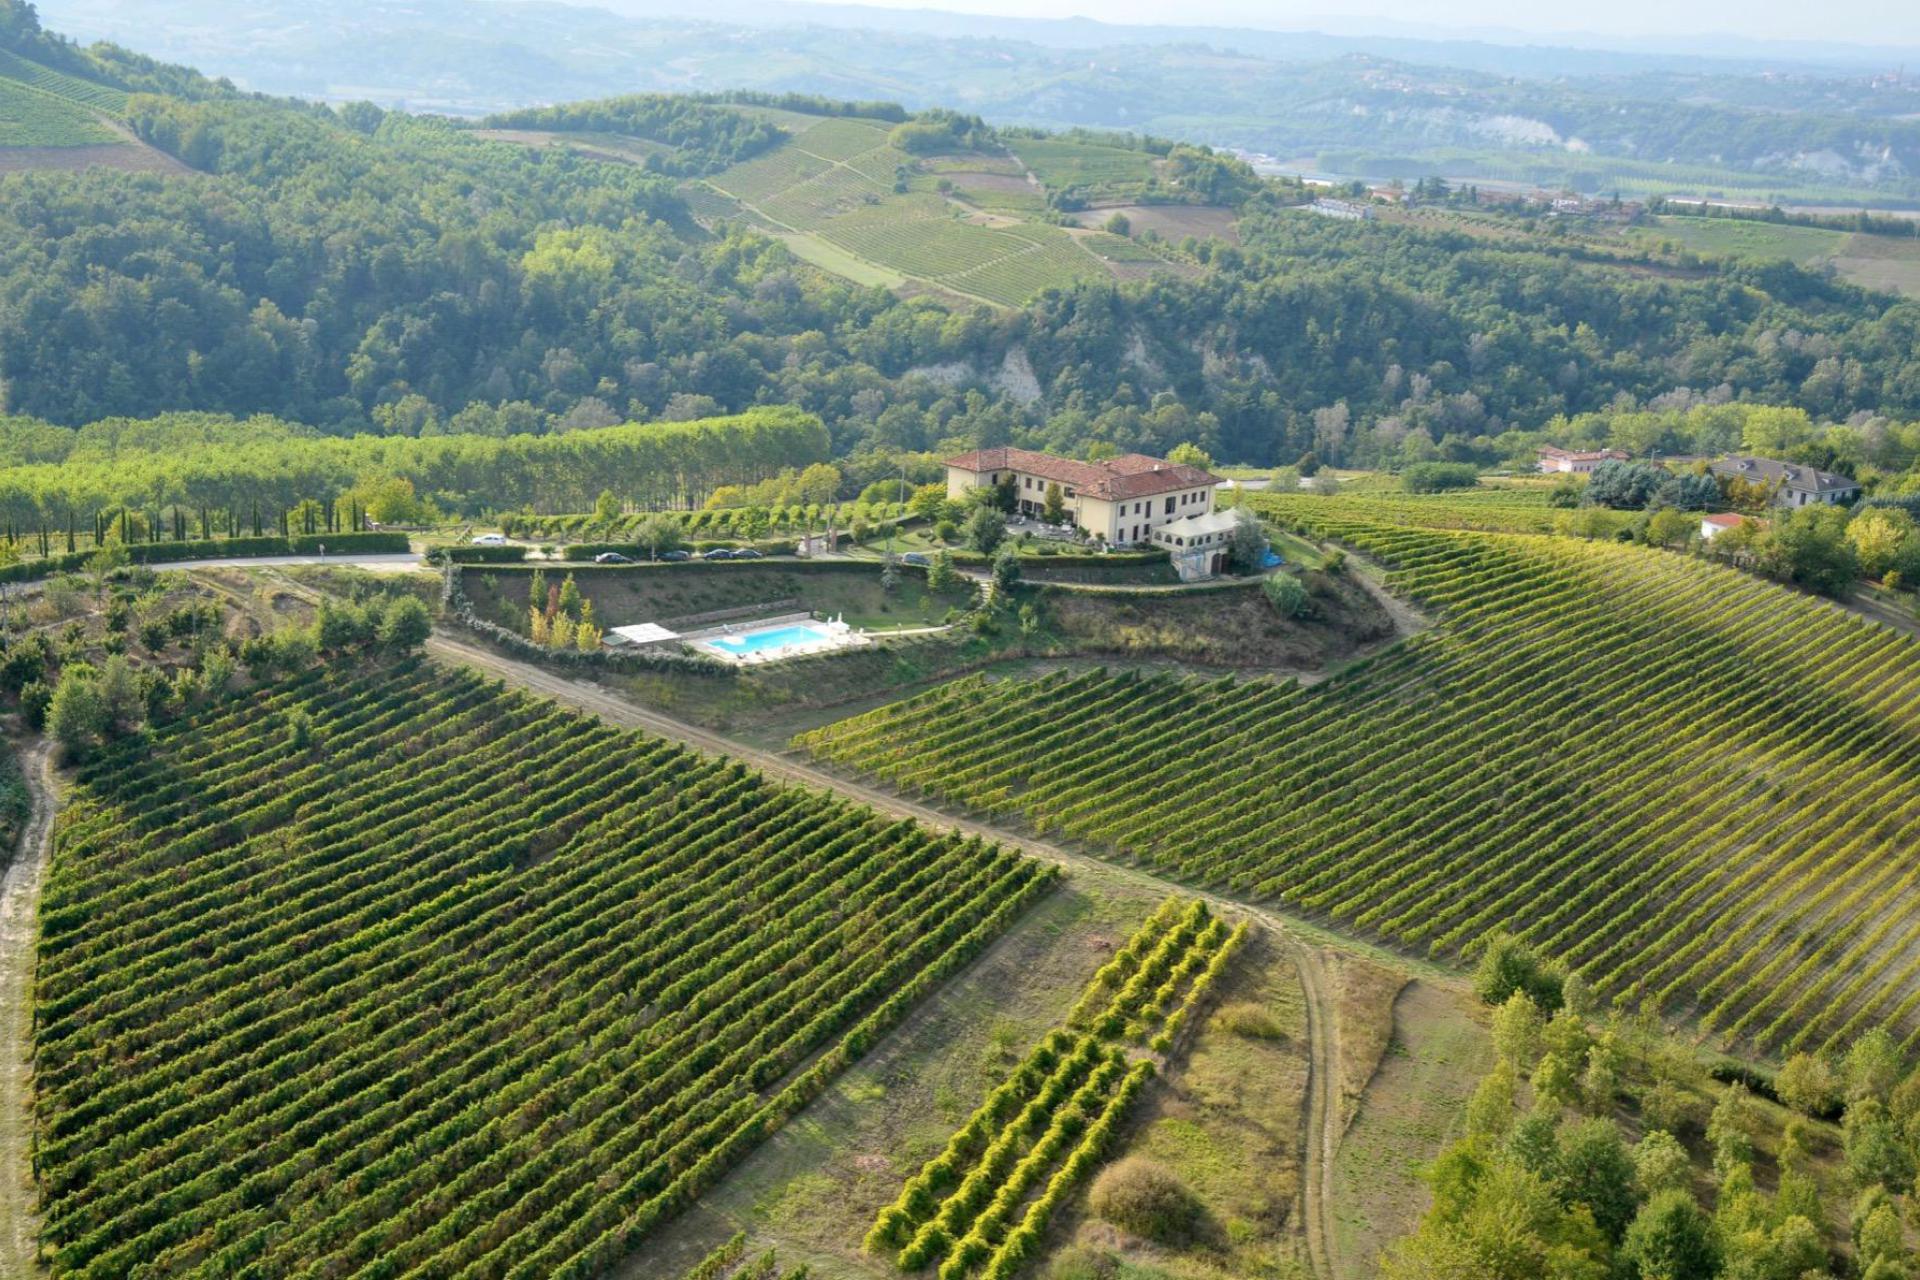 Agriturismo Piemonte voor liefhebbers van goede wijn